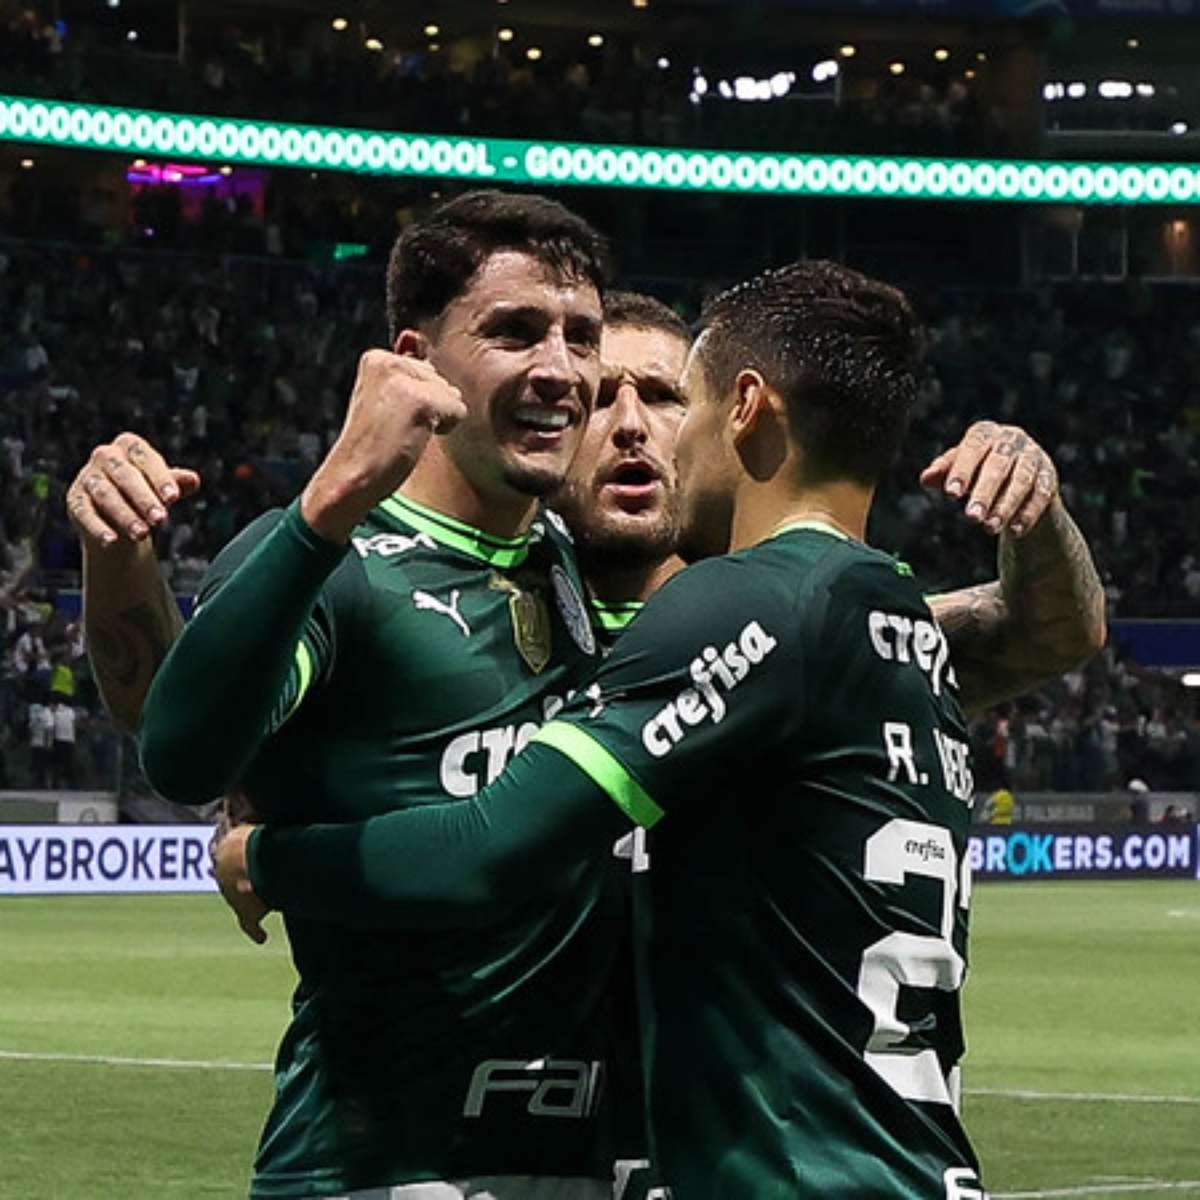 Palmeiras x Fortaleza: onde assistir, prováveis escalações e arbitragem